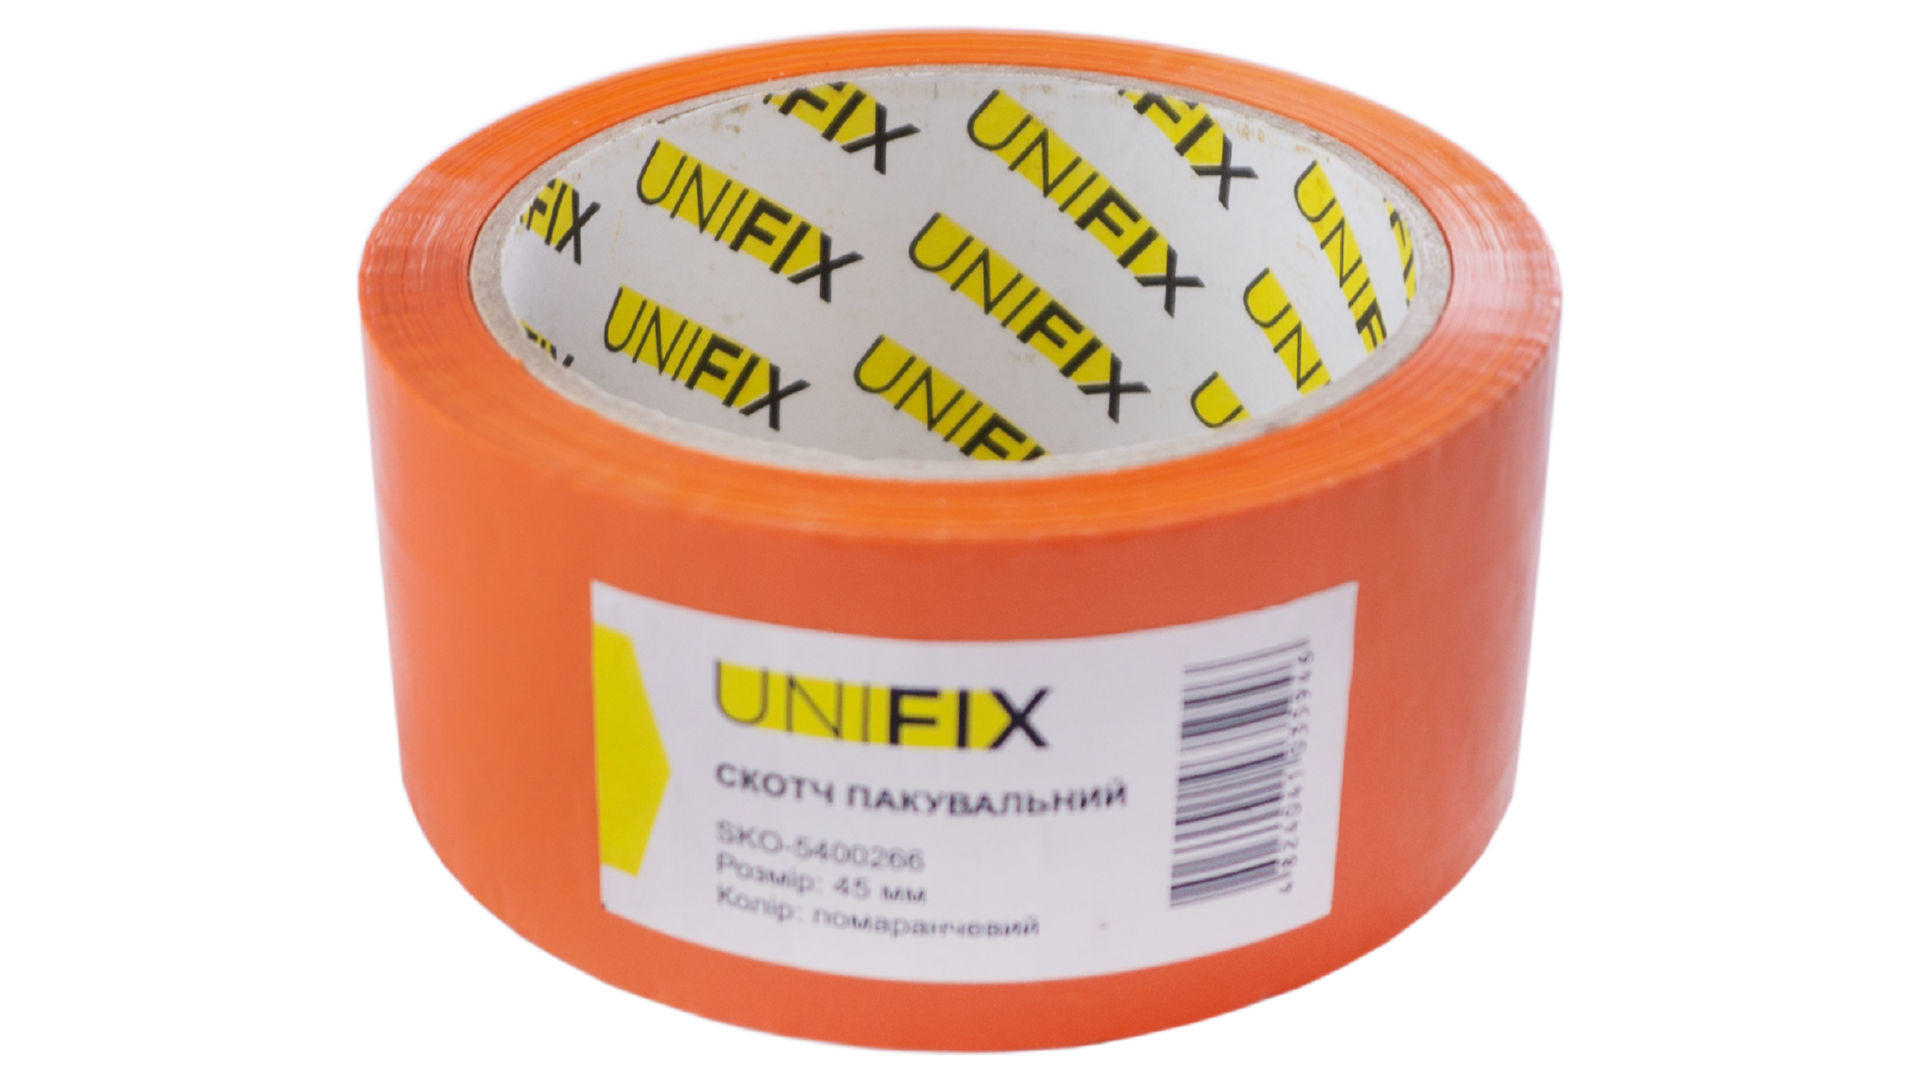 Скотч Unifix - 45 мм x 80 м x 40 мкм оранжевый 4